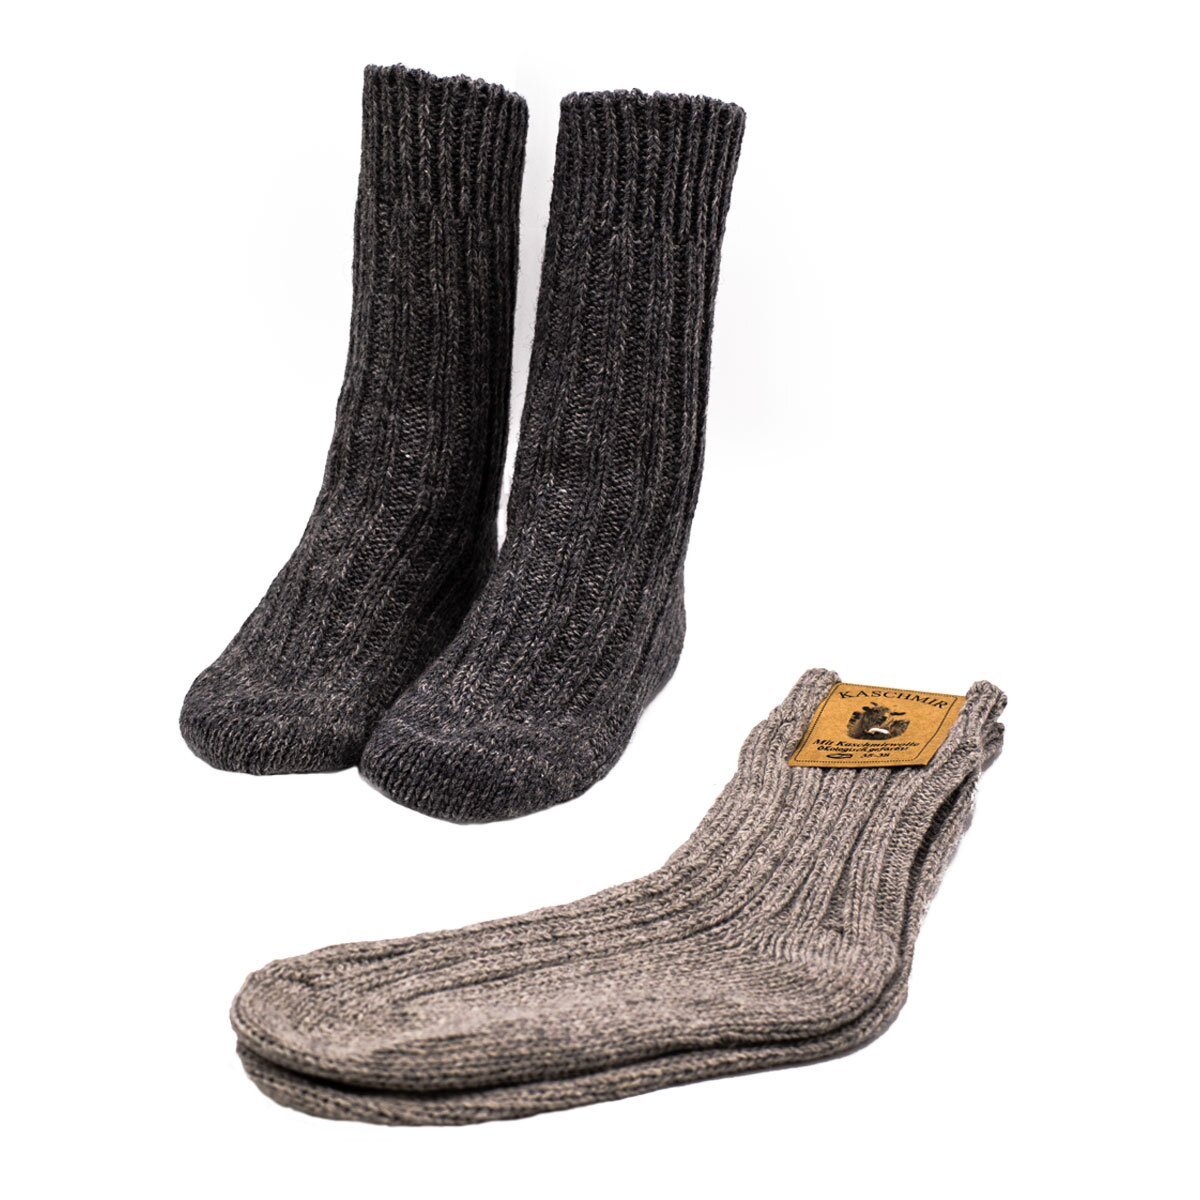 2 Paar dicke Wollsocken oder Stricksocken ökologisch gefärbt Grau, 15,00 €